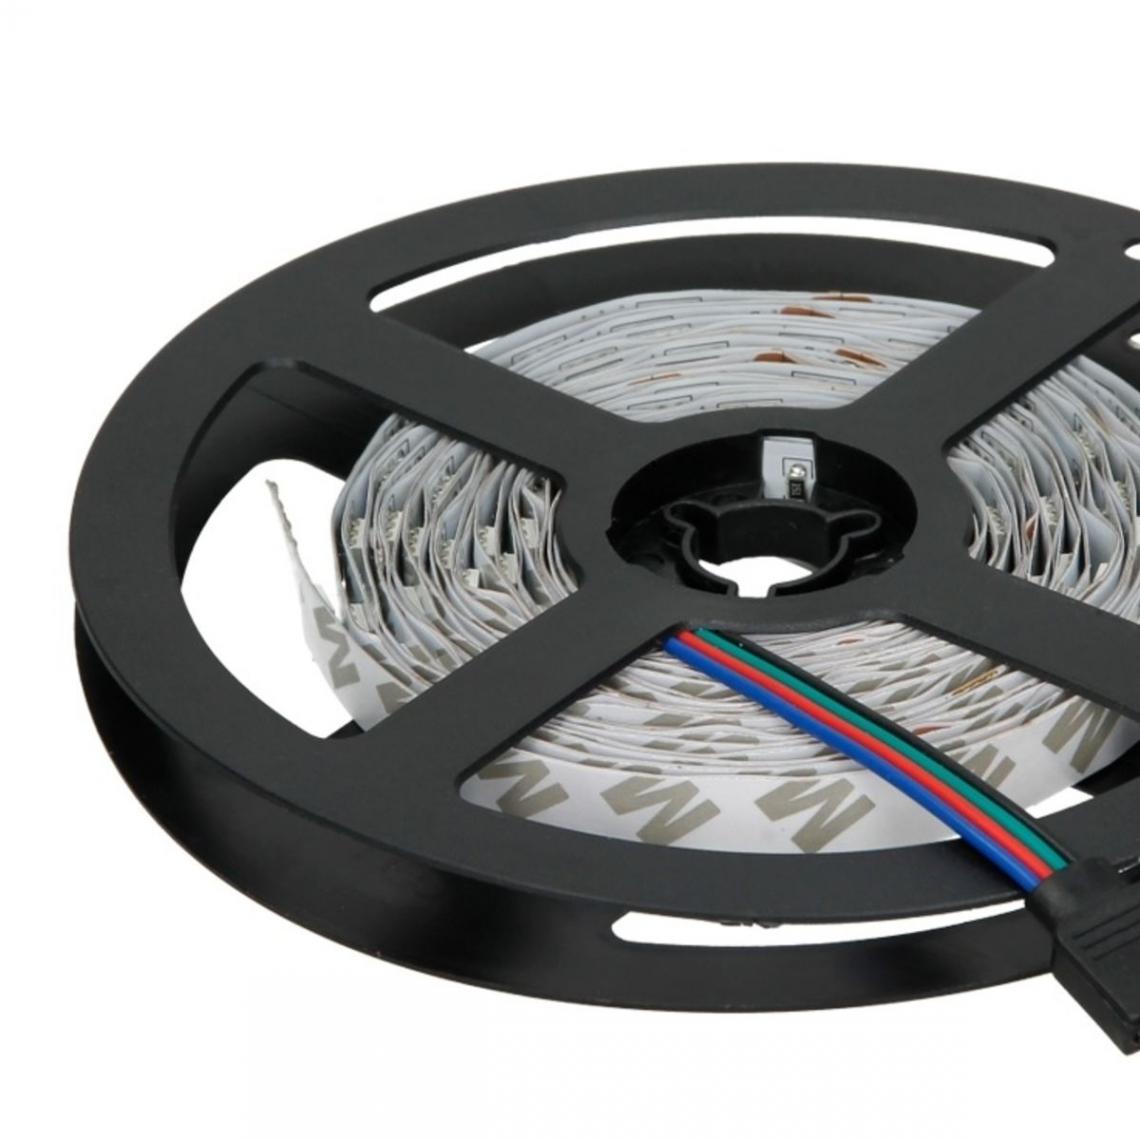 Ecd Germany - Bandes LED de 4 m, RGB - 30 LED par mètre - Ruban LED